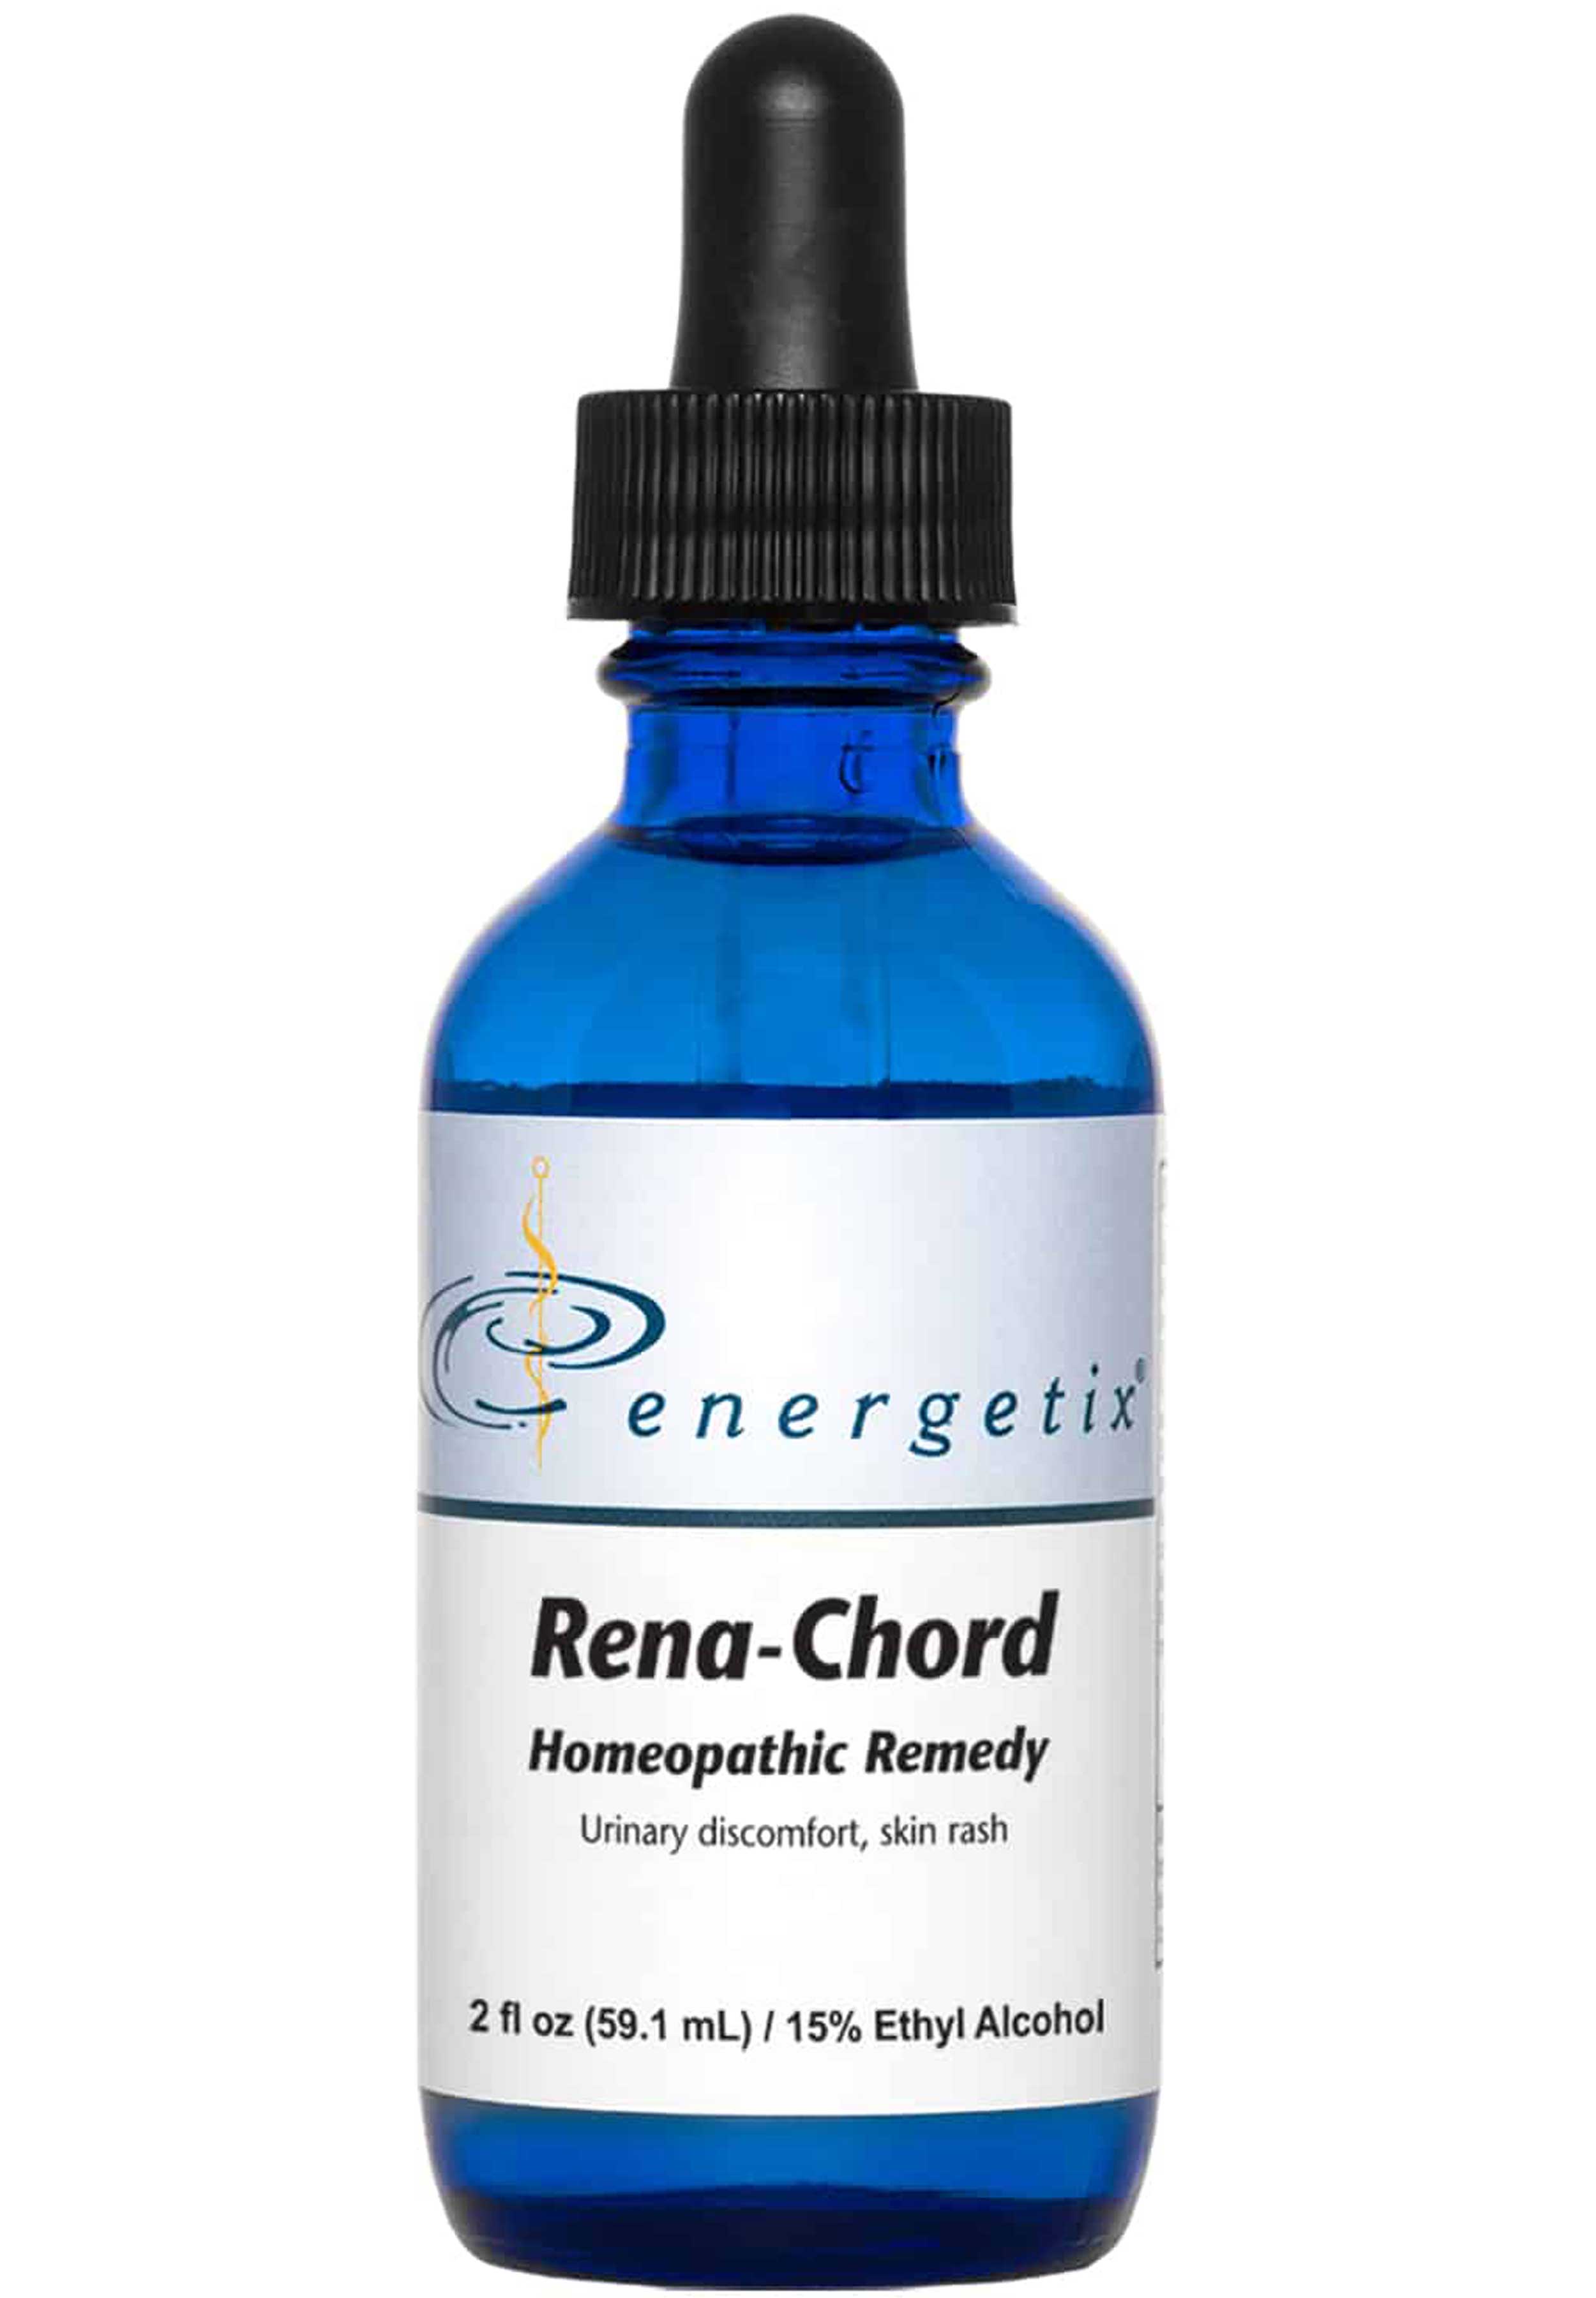 Energetix Rena-Chord